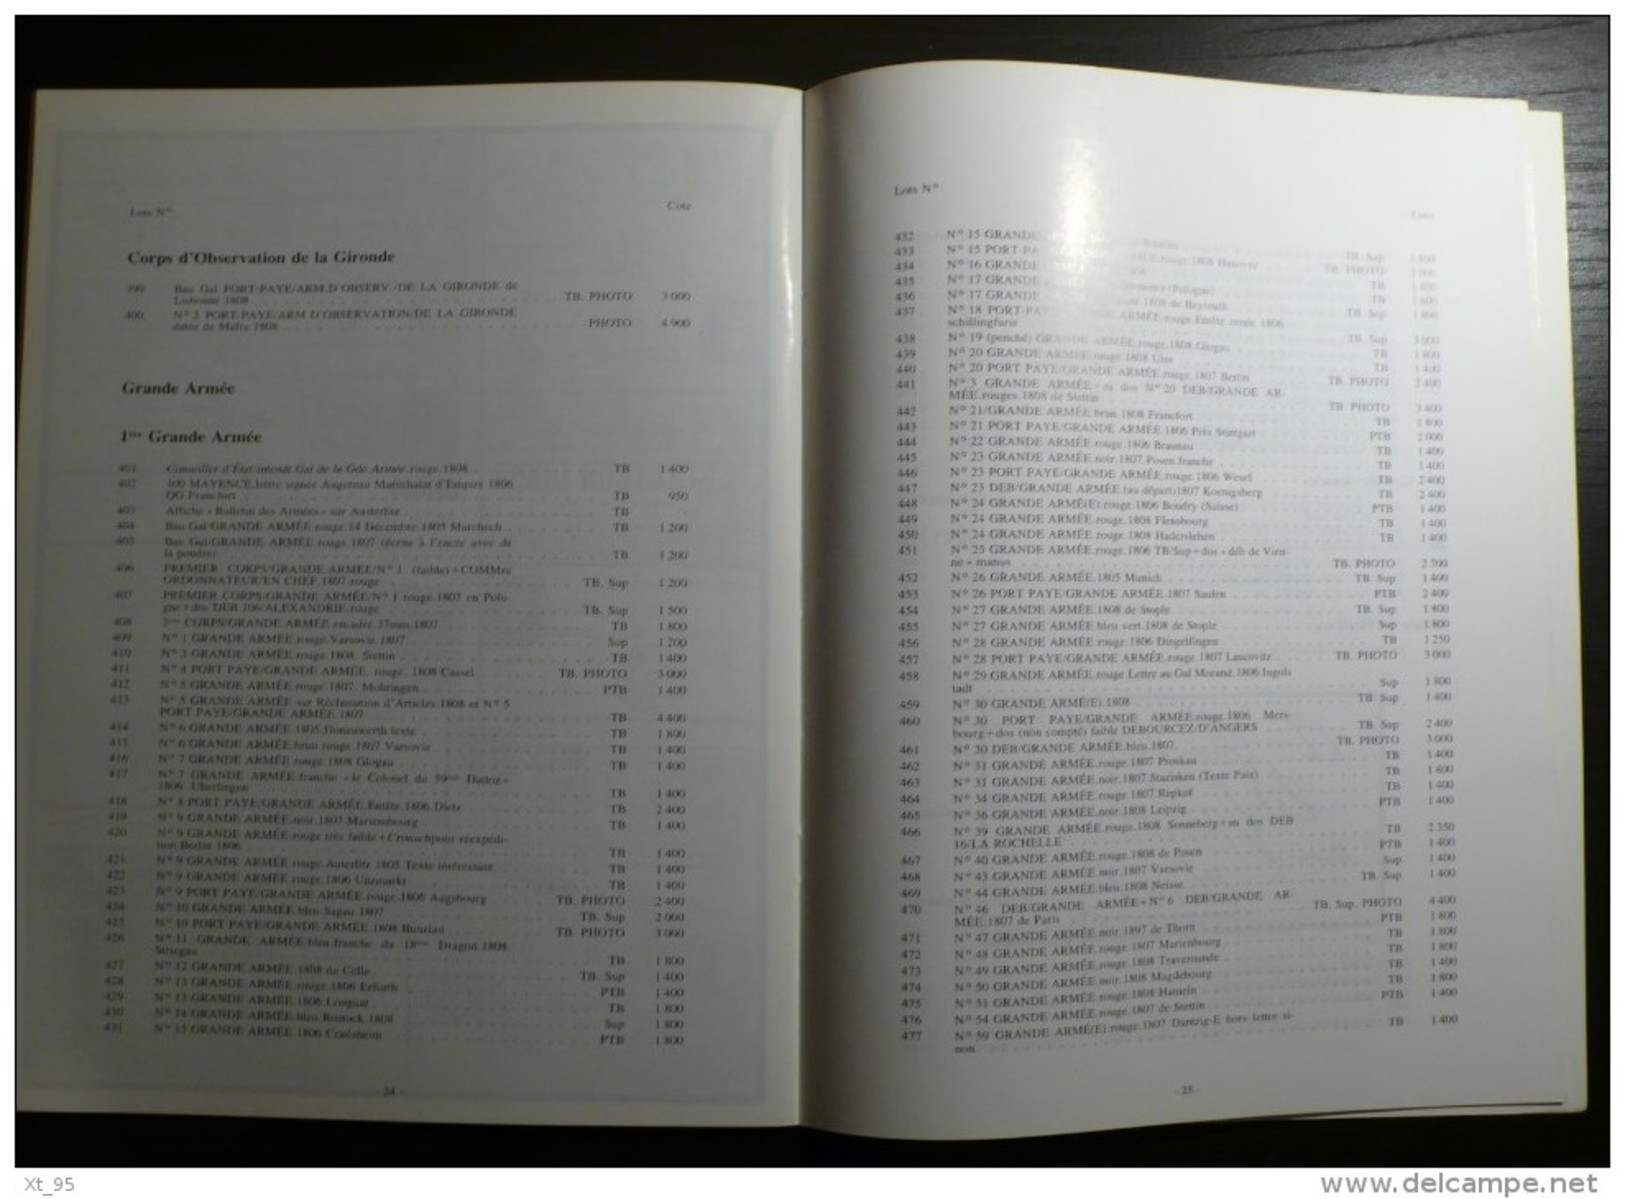 Vente Aux Encheres Collection Dubus - 1988 - 40 Pages - Cataloghi Di Case D'aste